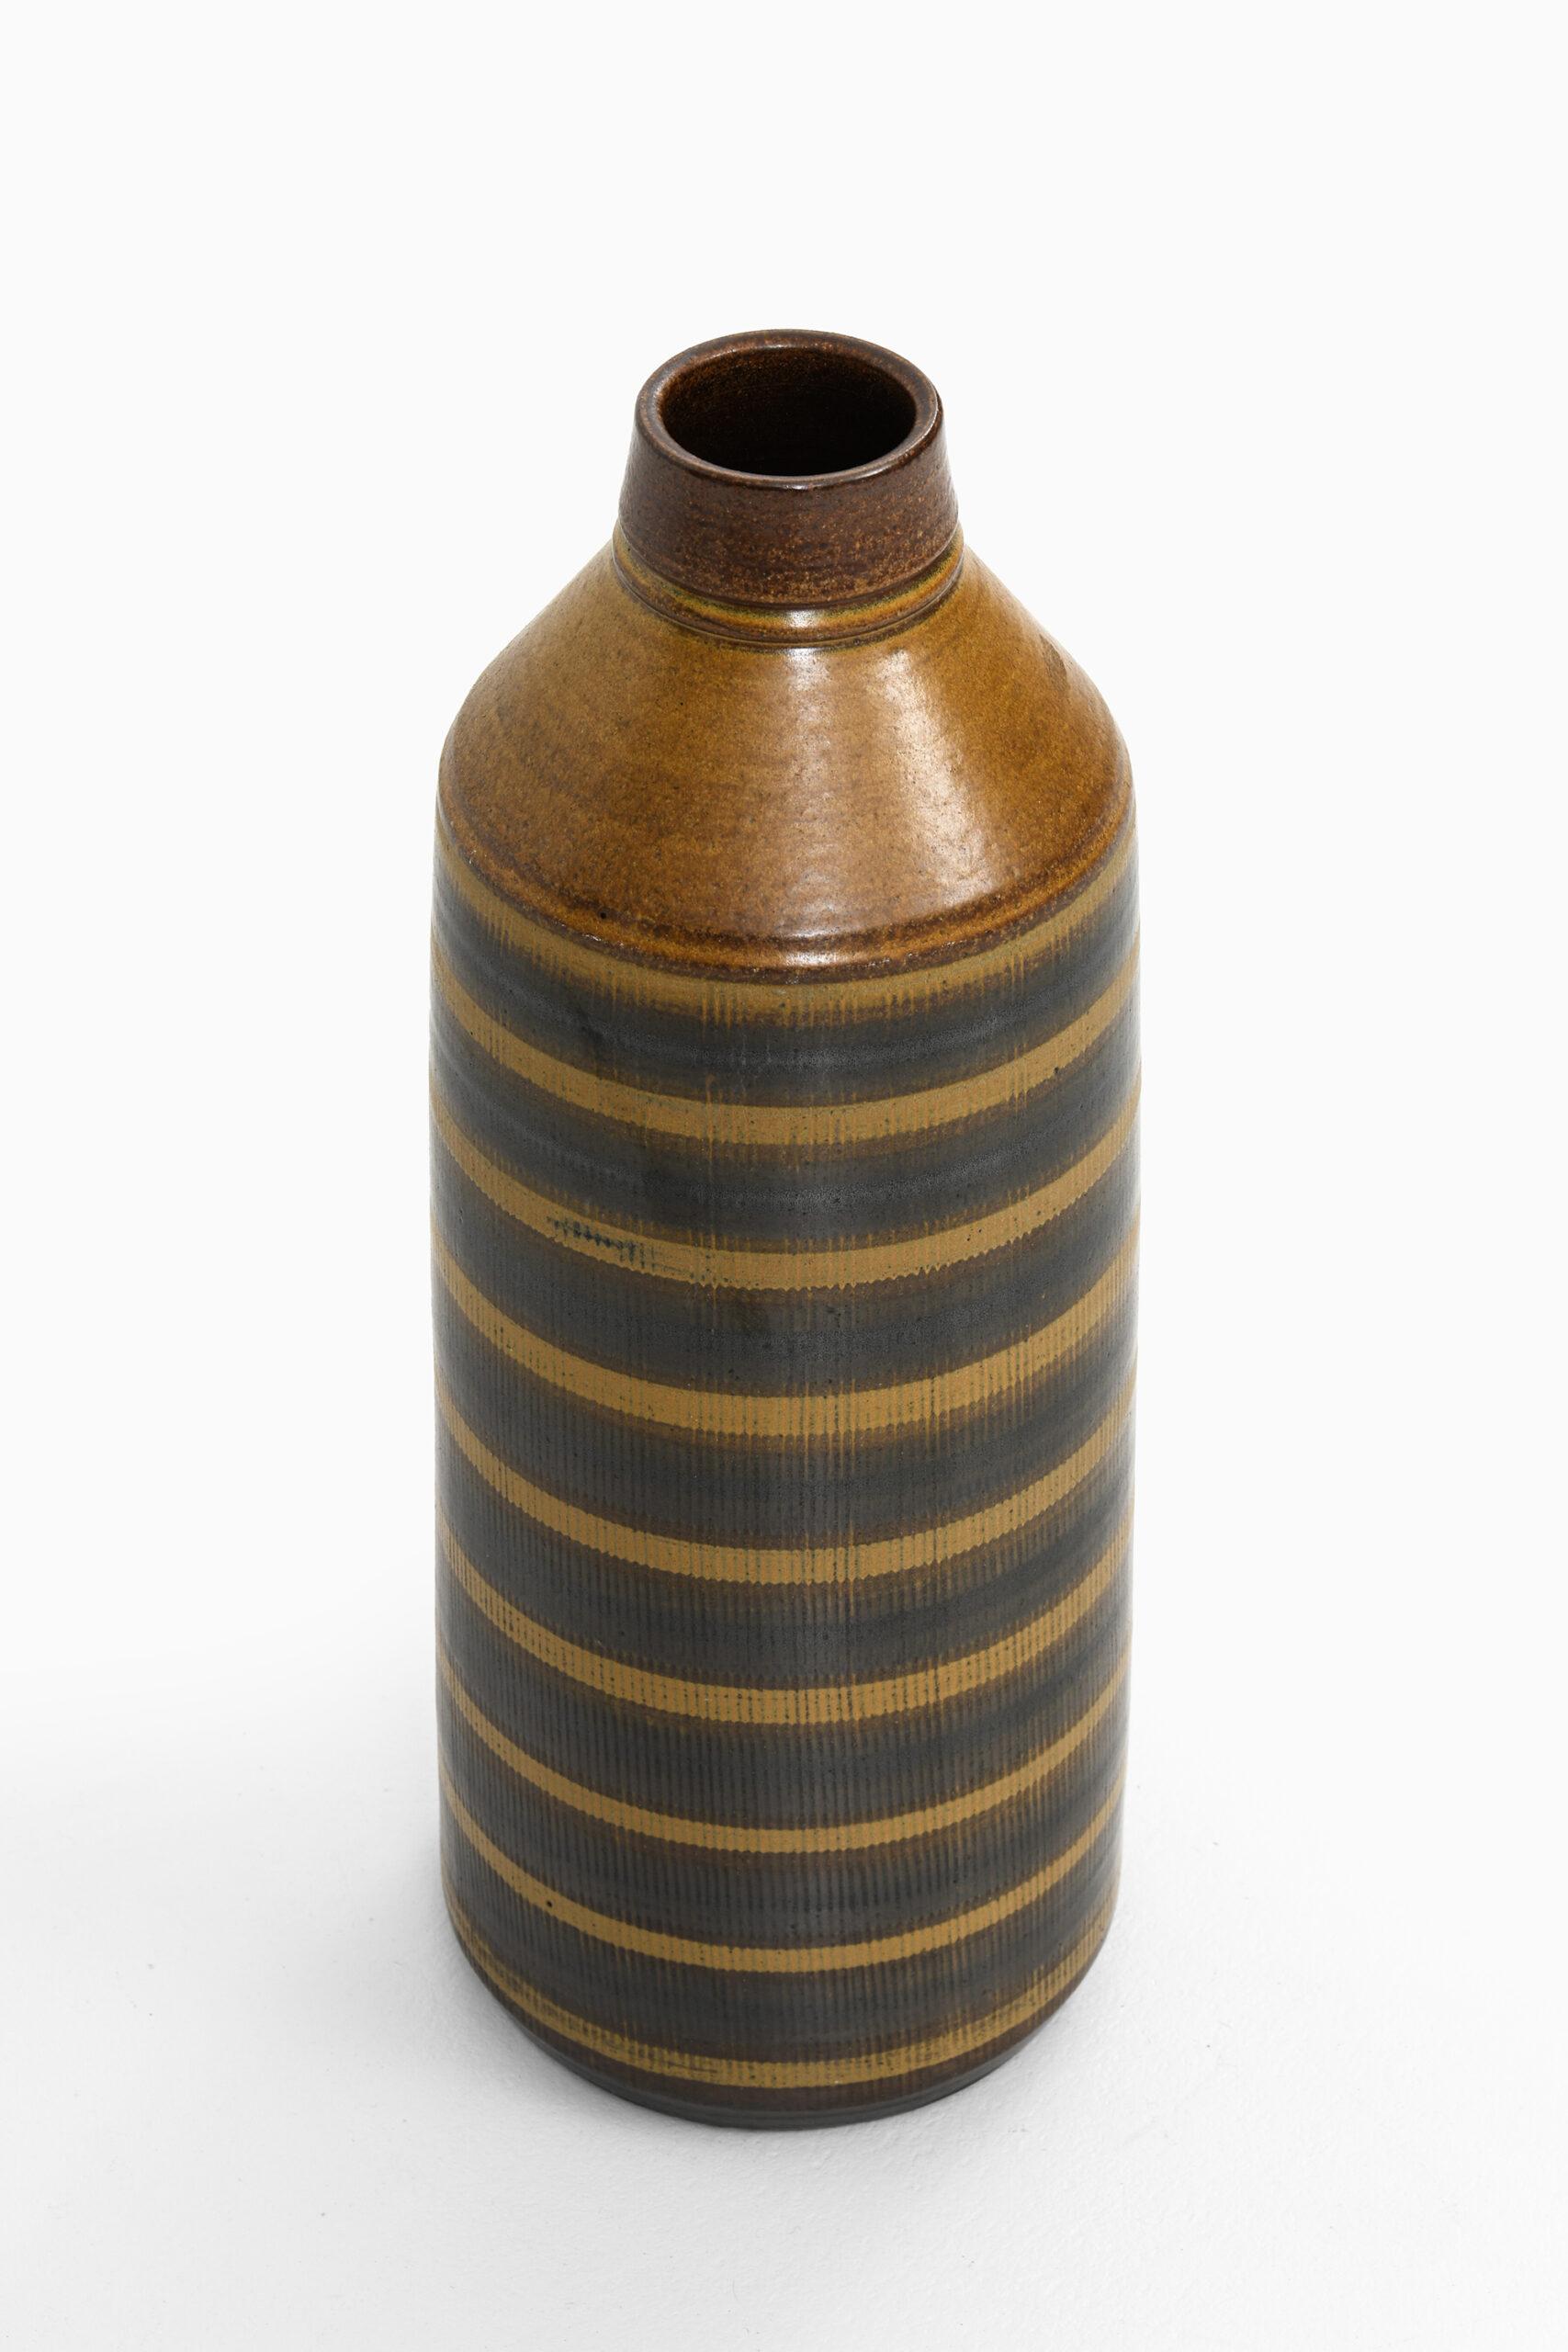 Rare floor vase designed by Birger Larsson. Produced by Wallåkra in Sweden.